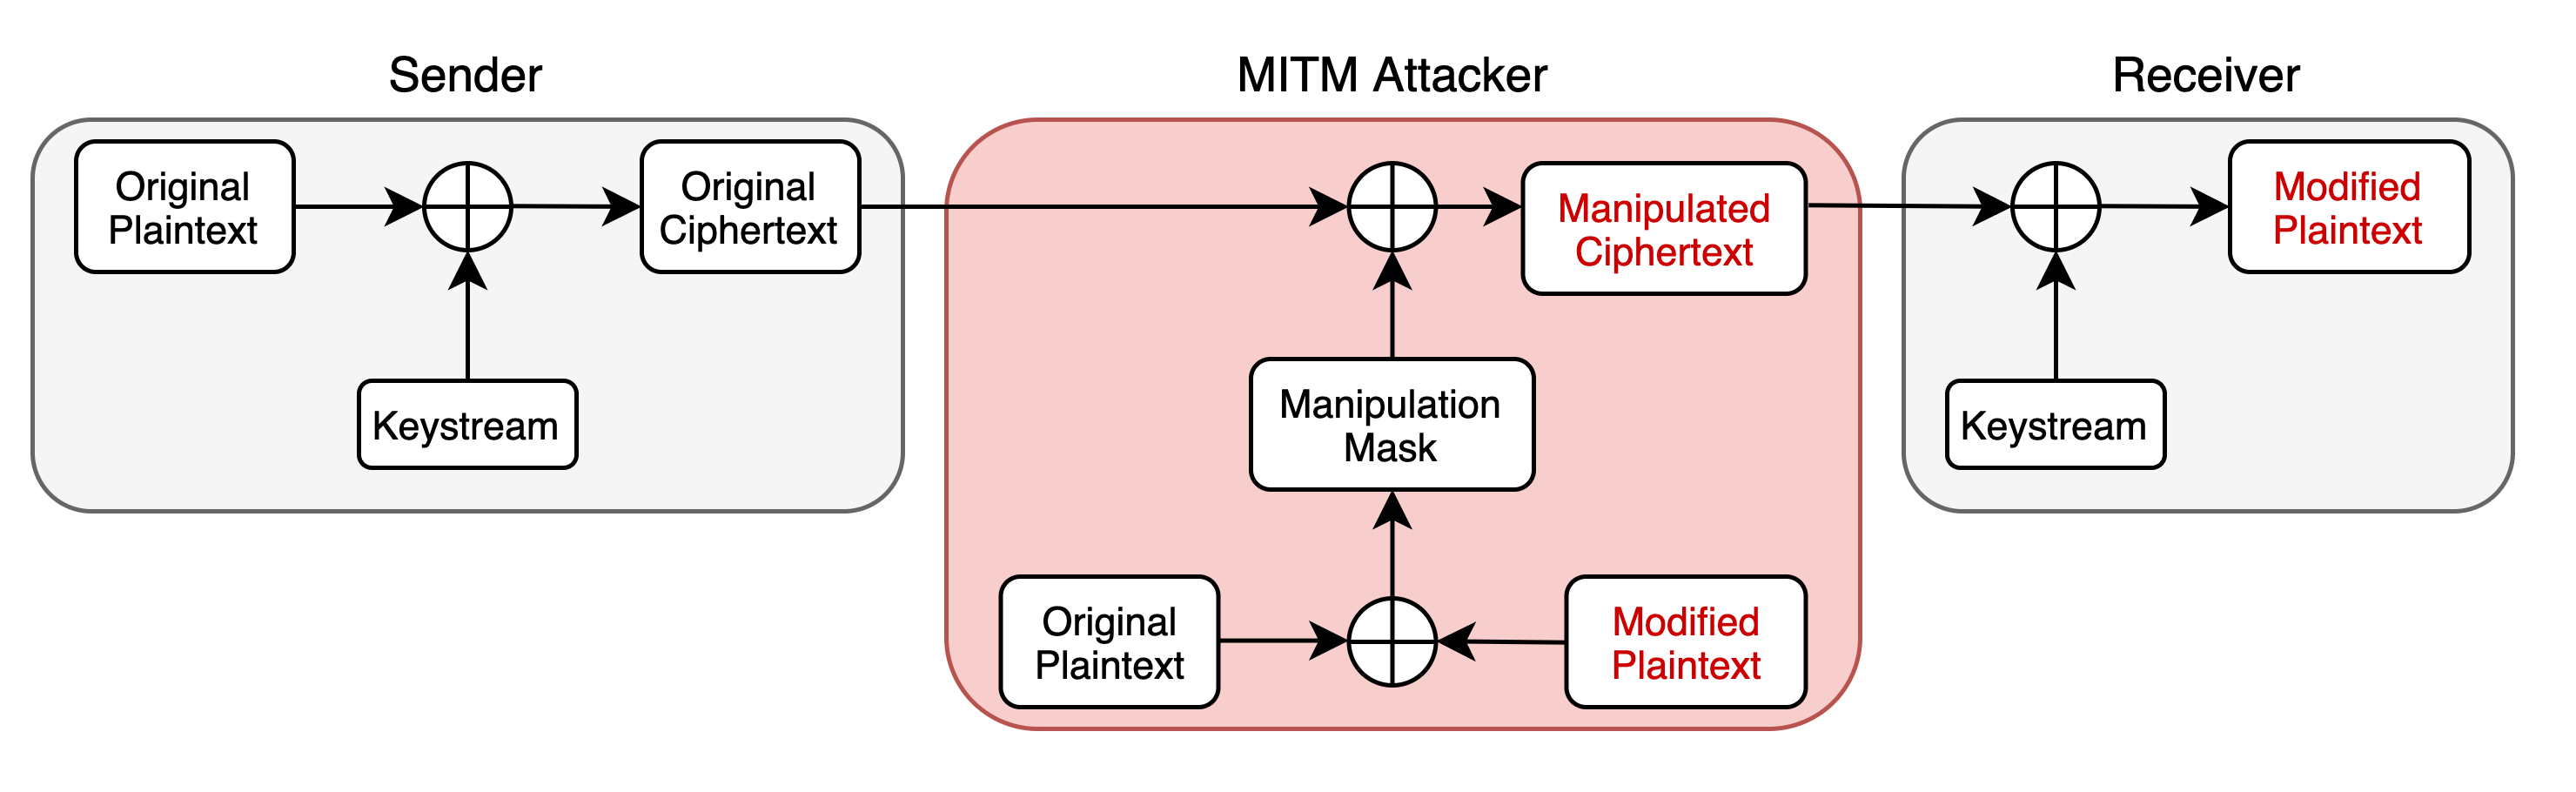 Attack Diagram